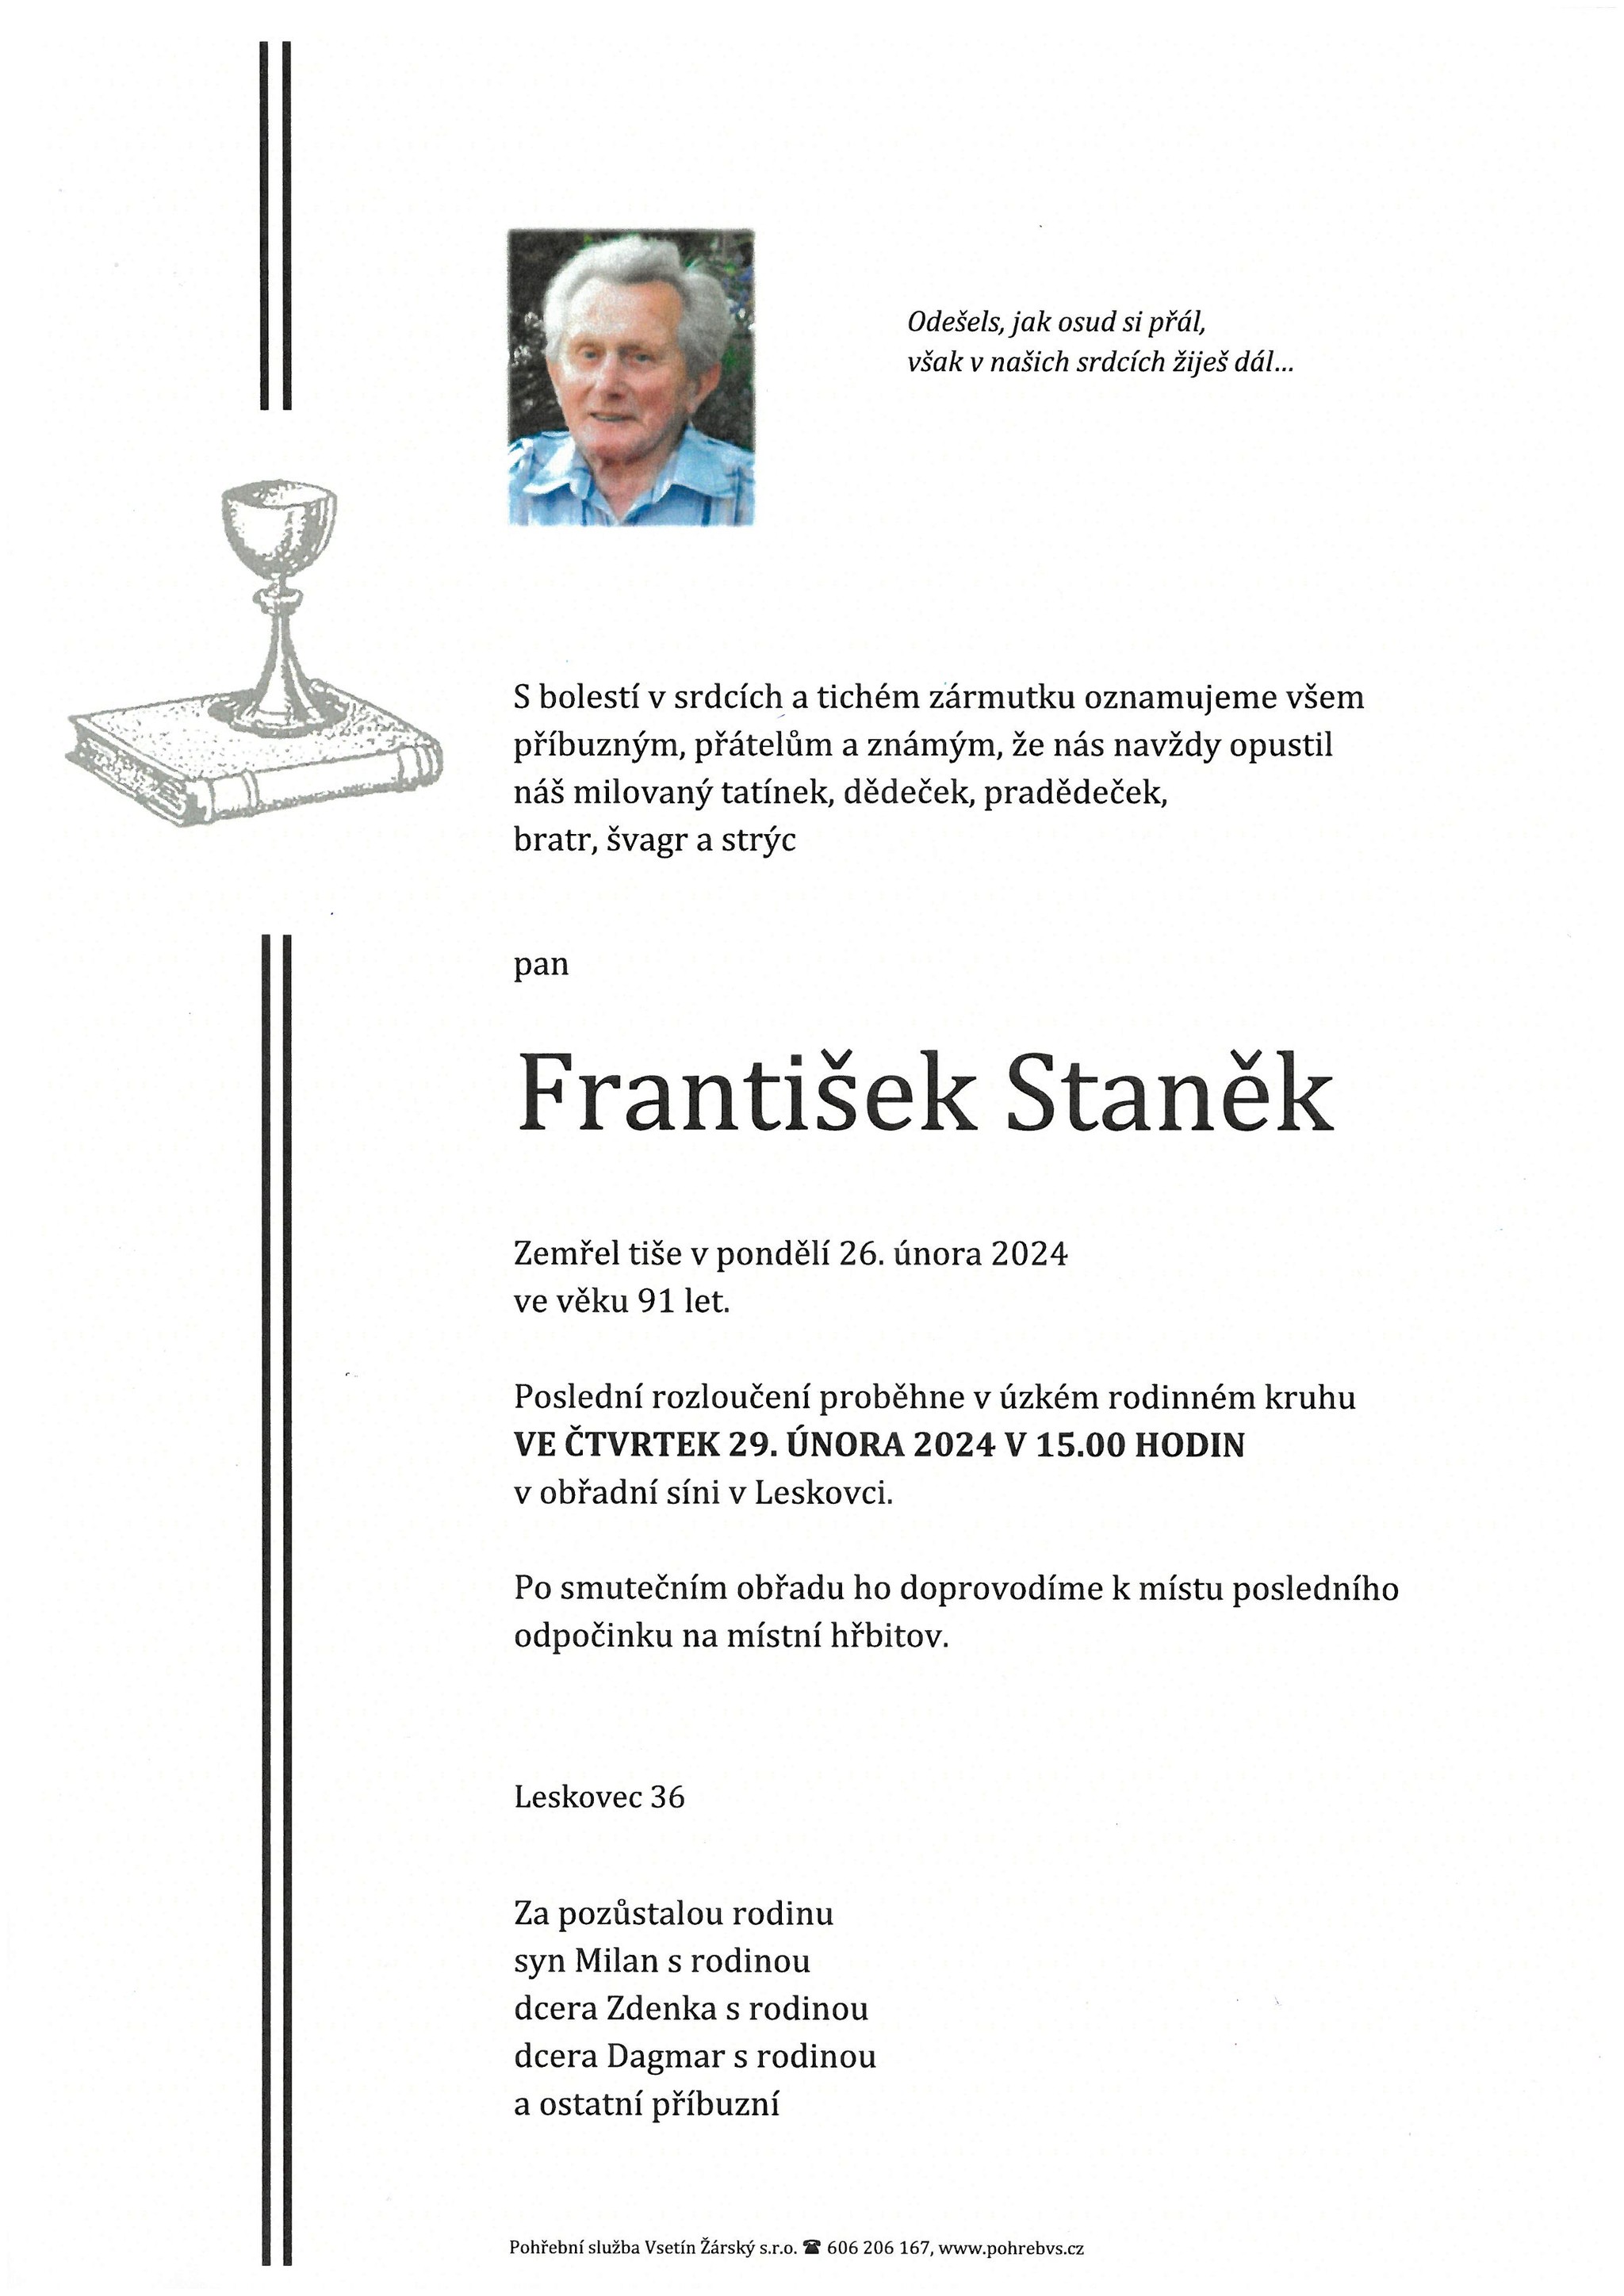 František Staněk